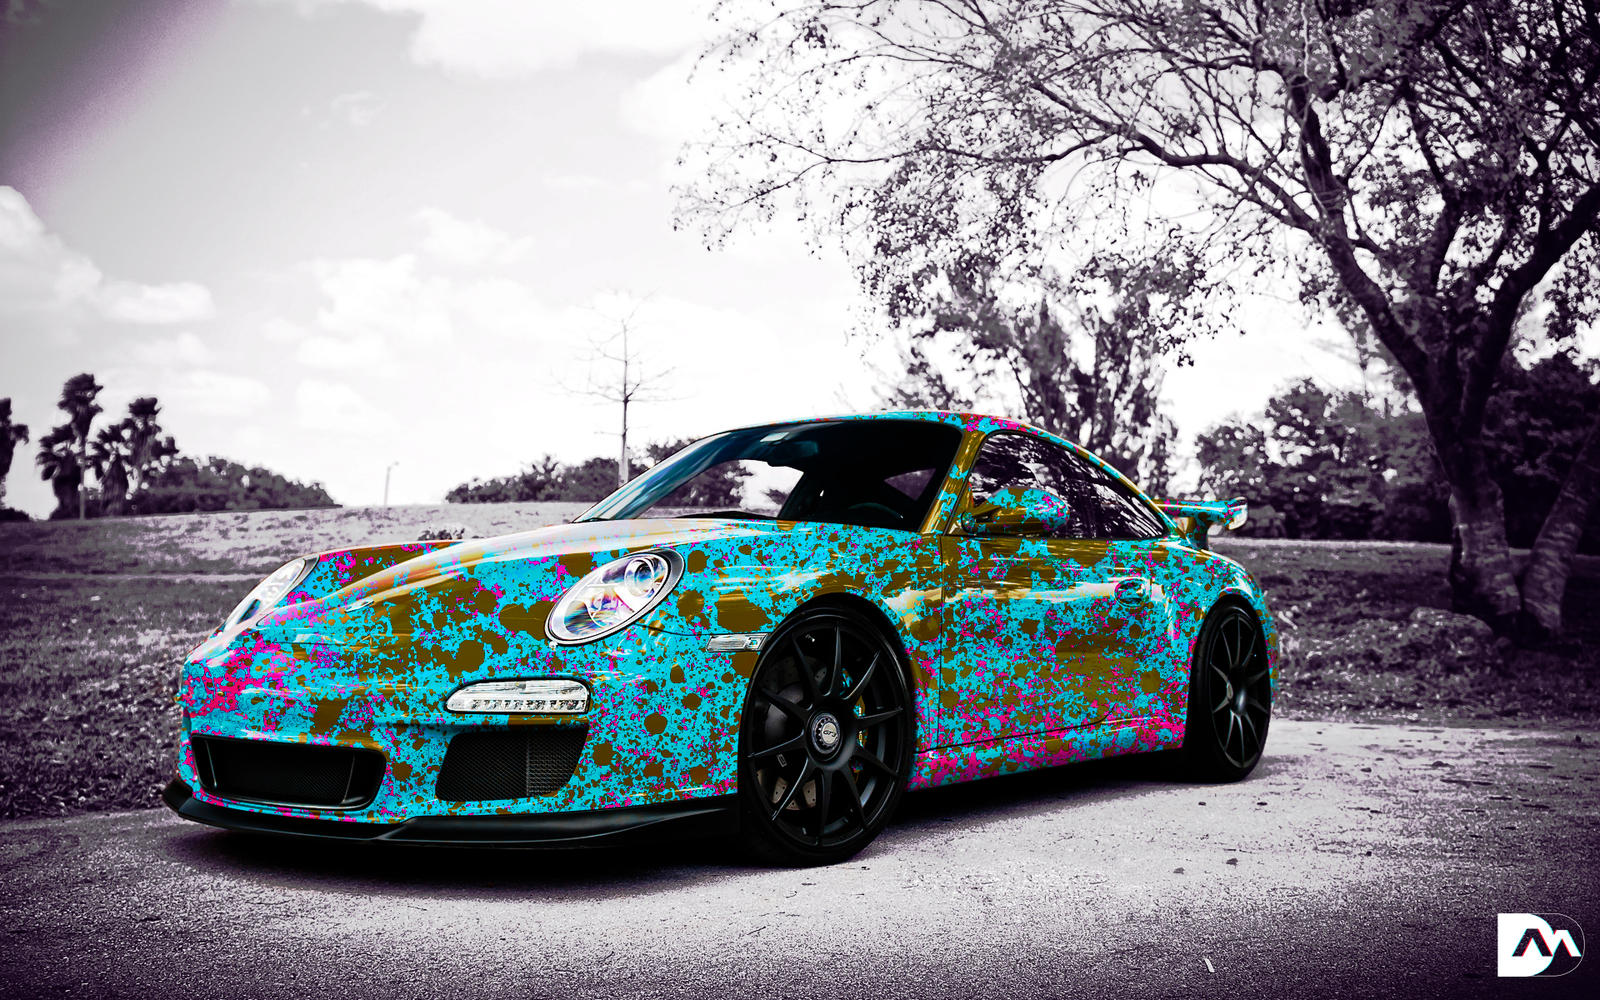 Design #19 26/01/2013 - Colorful Porsche